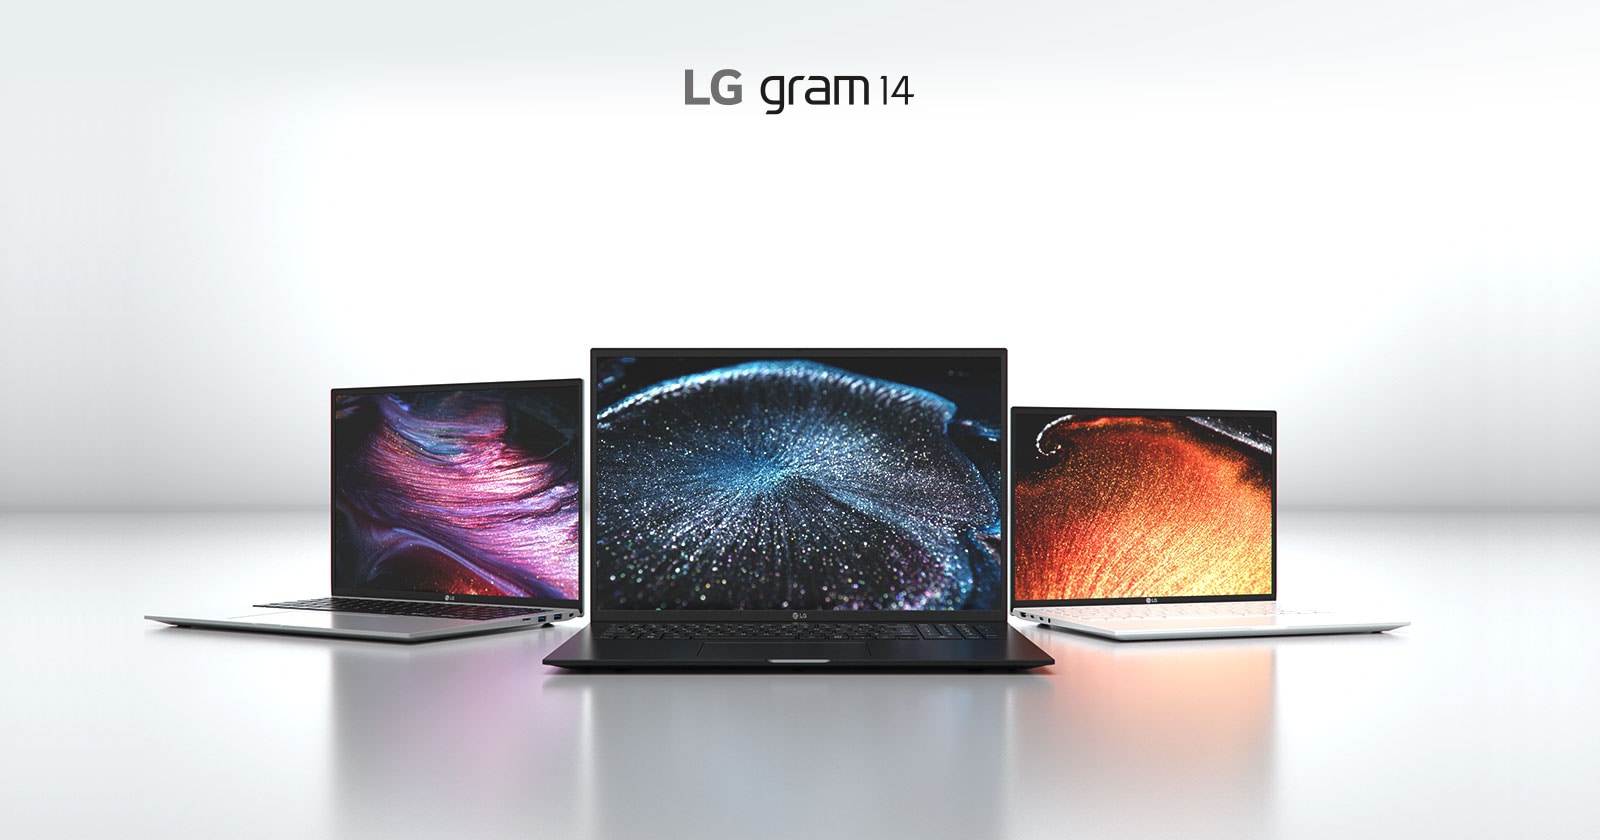 LG gram 14 mang tới tất cả các tính năng trong một chiếc máy nhẹ chưa từng thấy